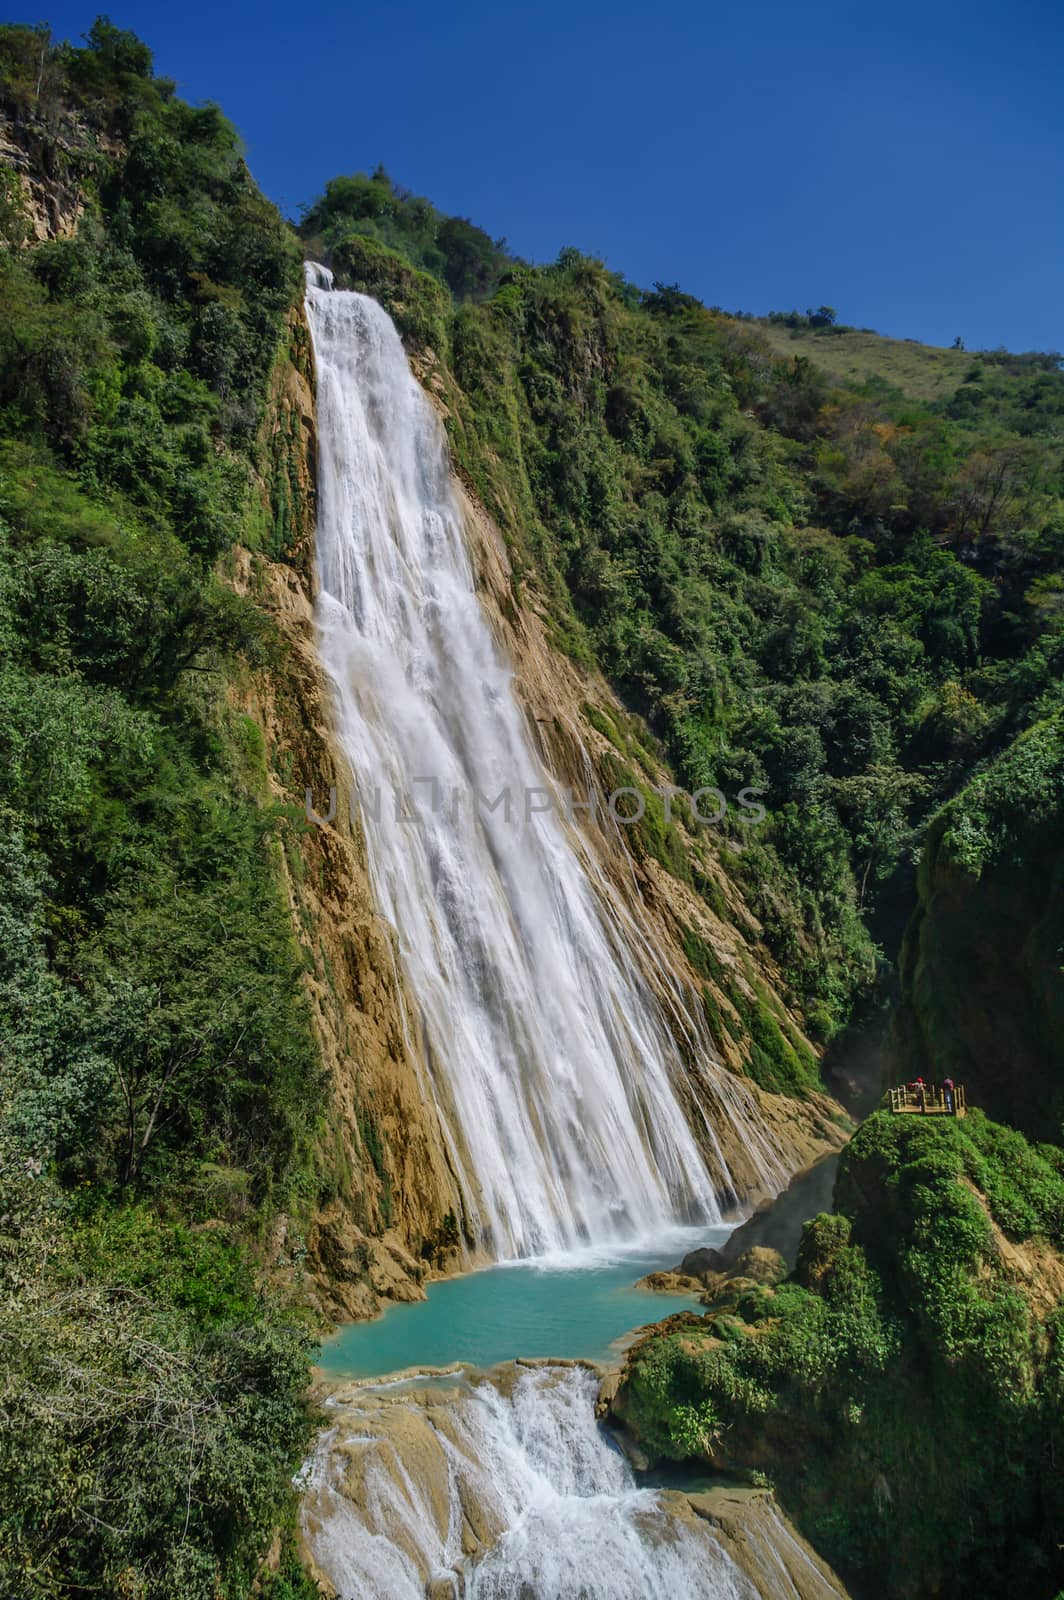 Great Mexican Chiapas  El Chiflon Waterfall, Mexico by Smoke666